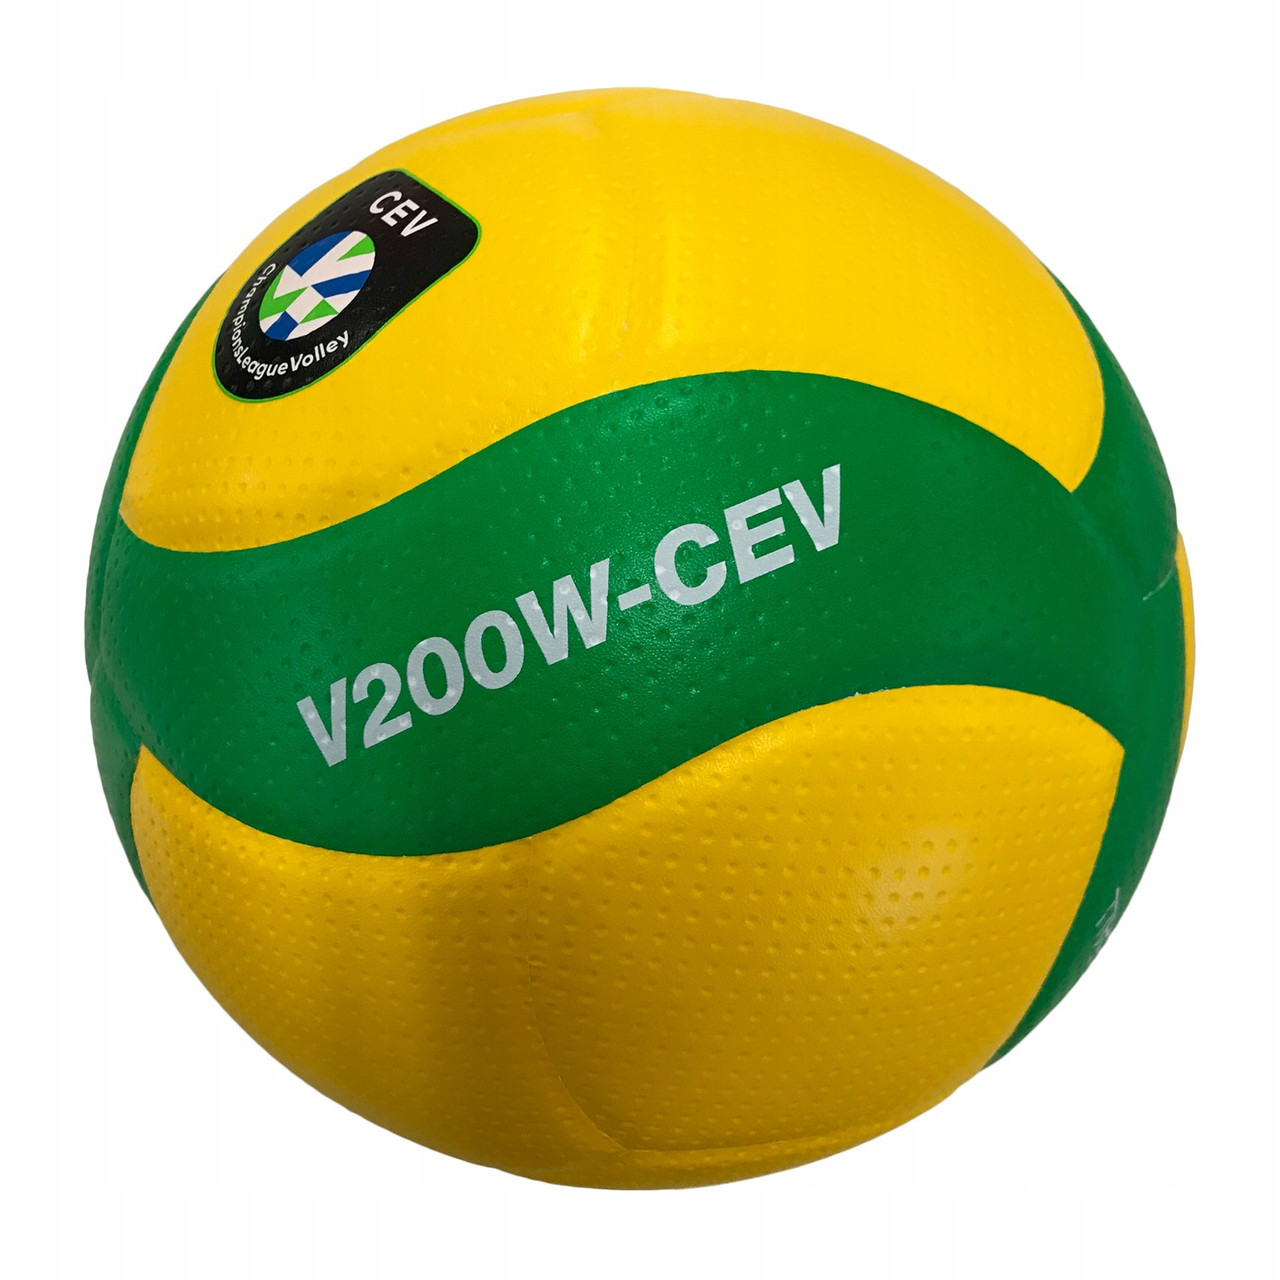 Мяч волейбольный для школы